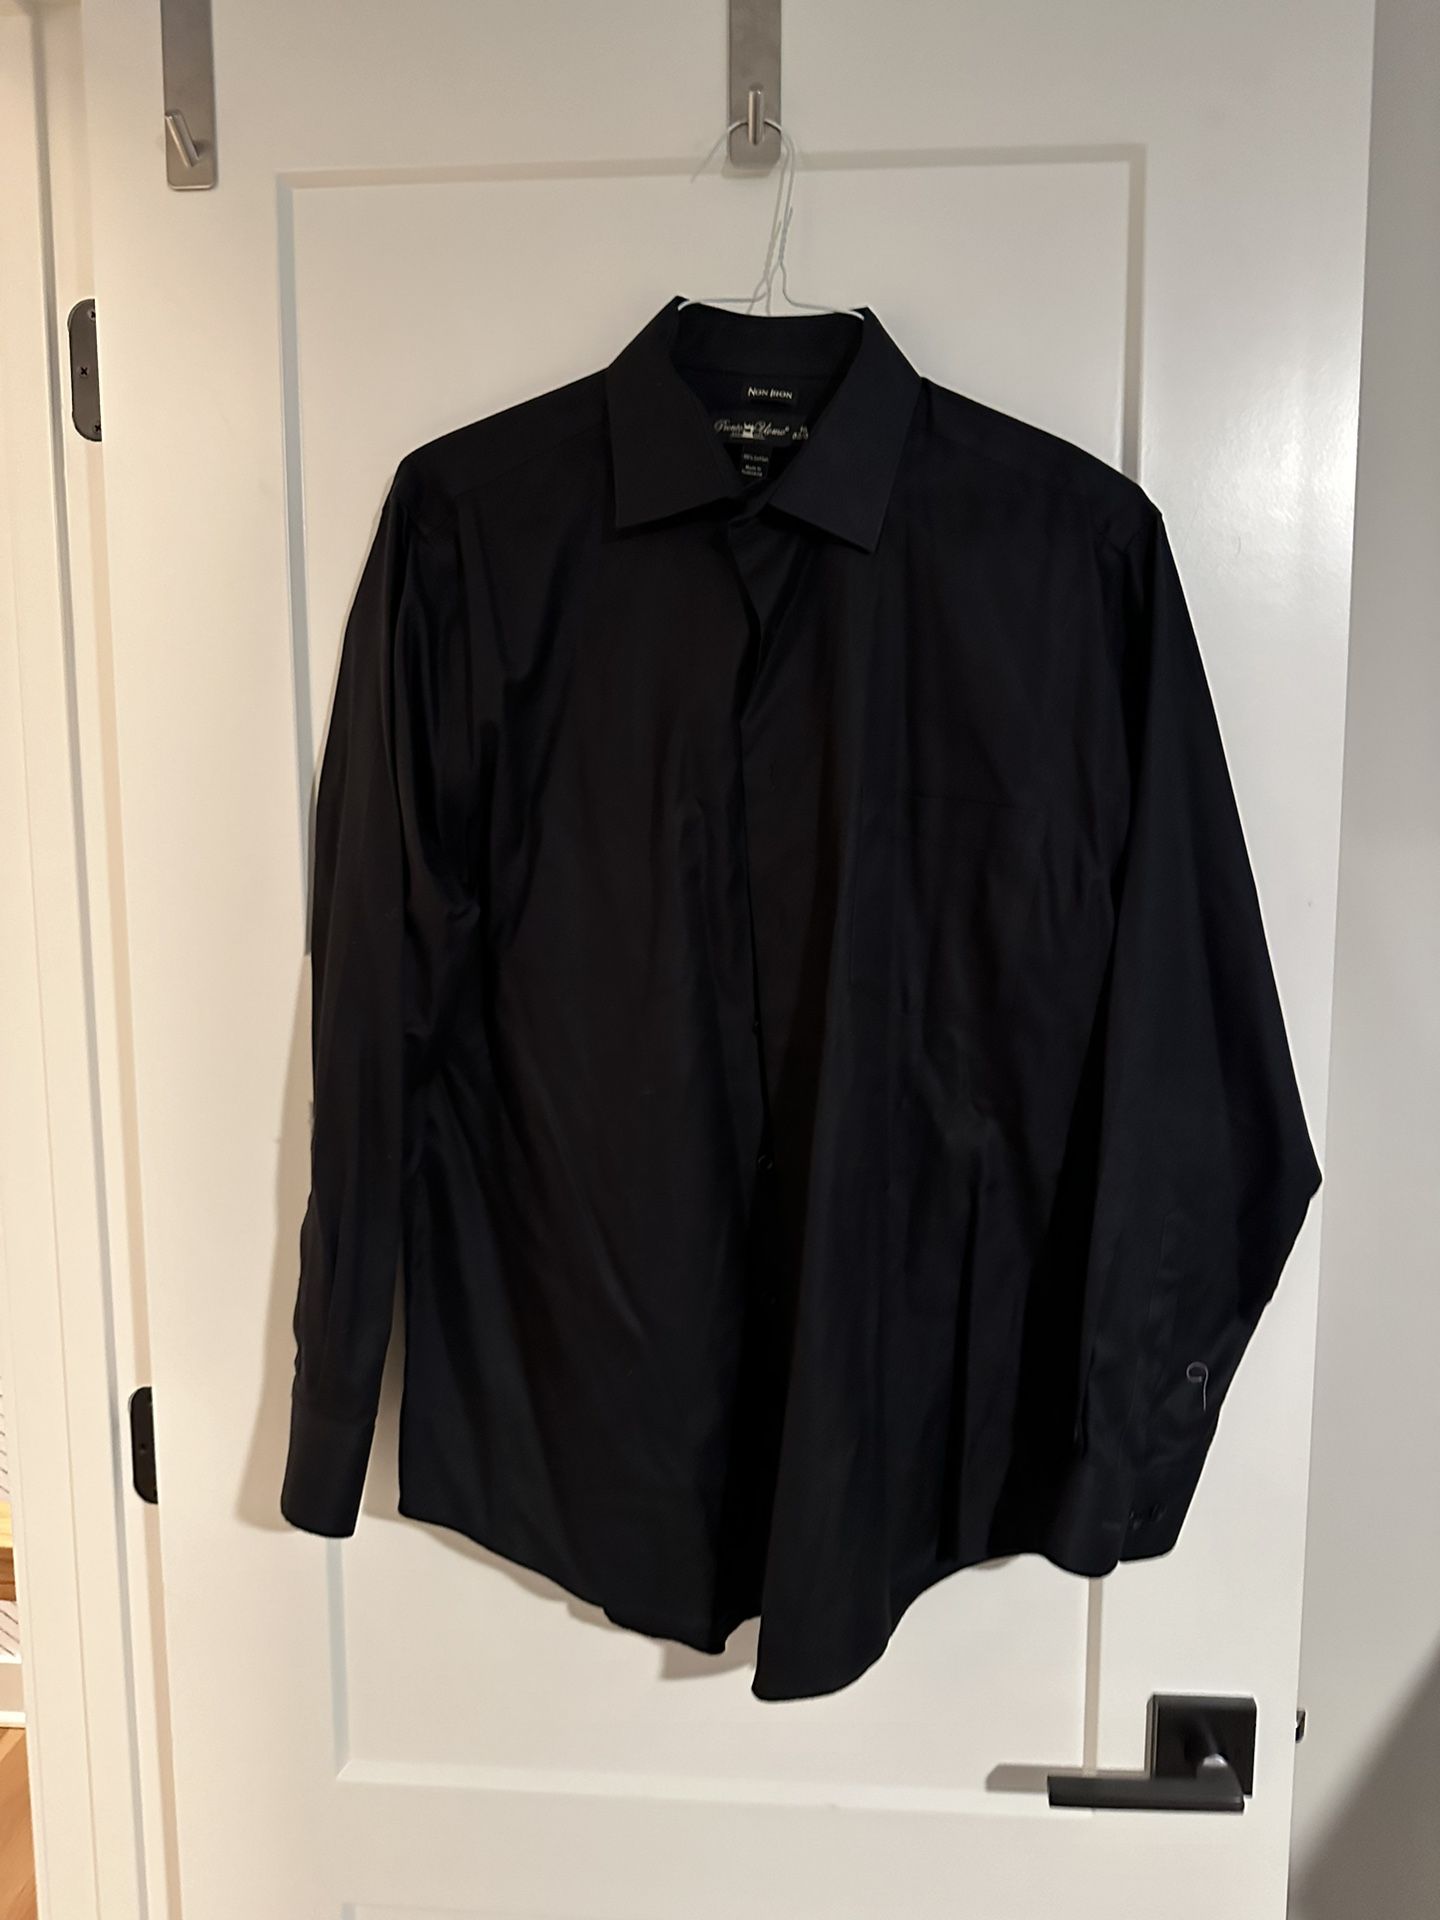 Pronto Uomo Non-Iron Black Dress Shirt Size 16 32/33